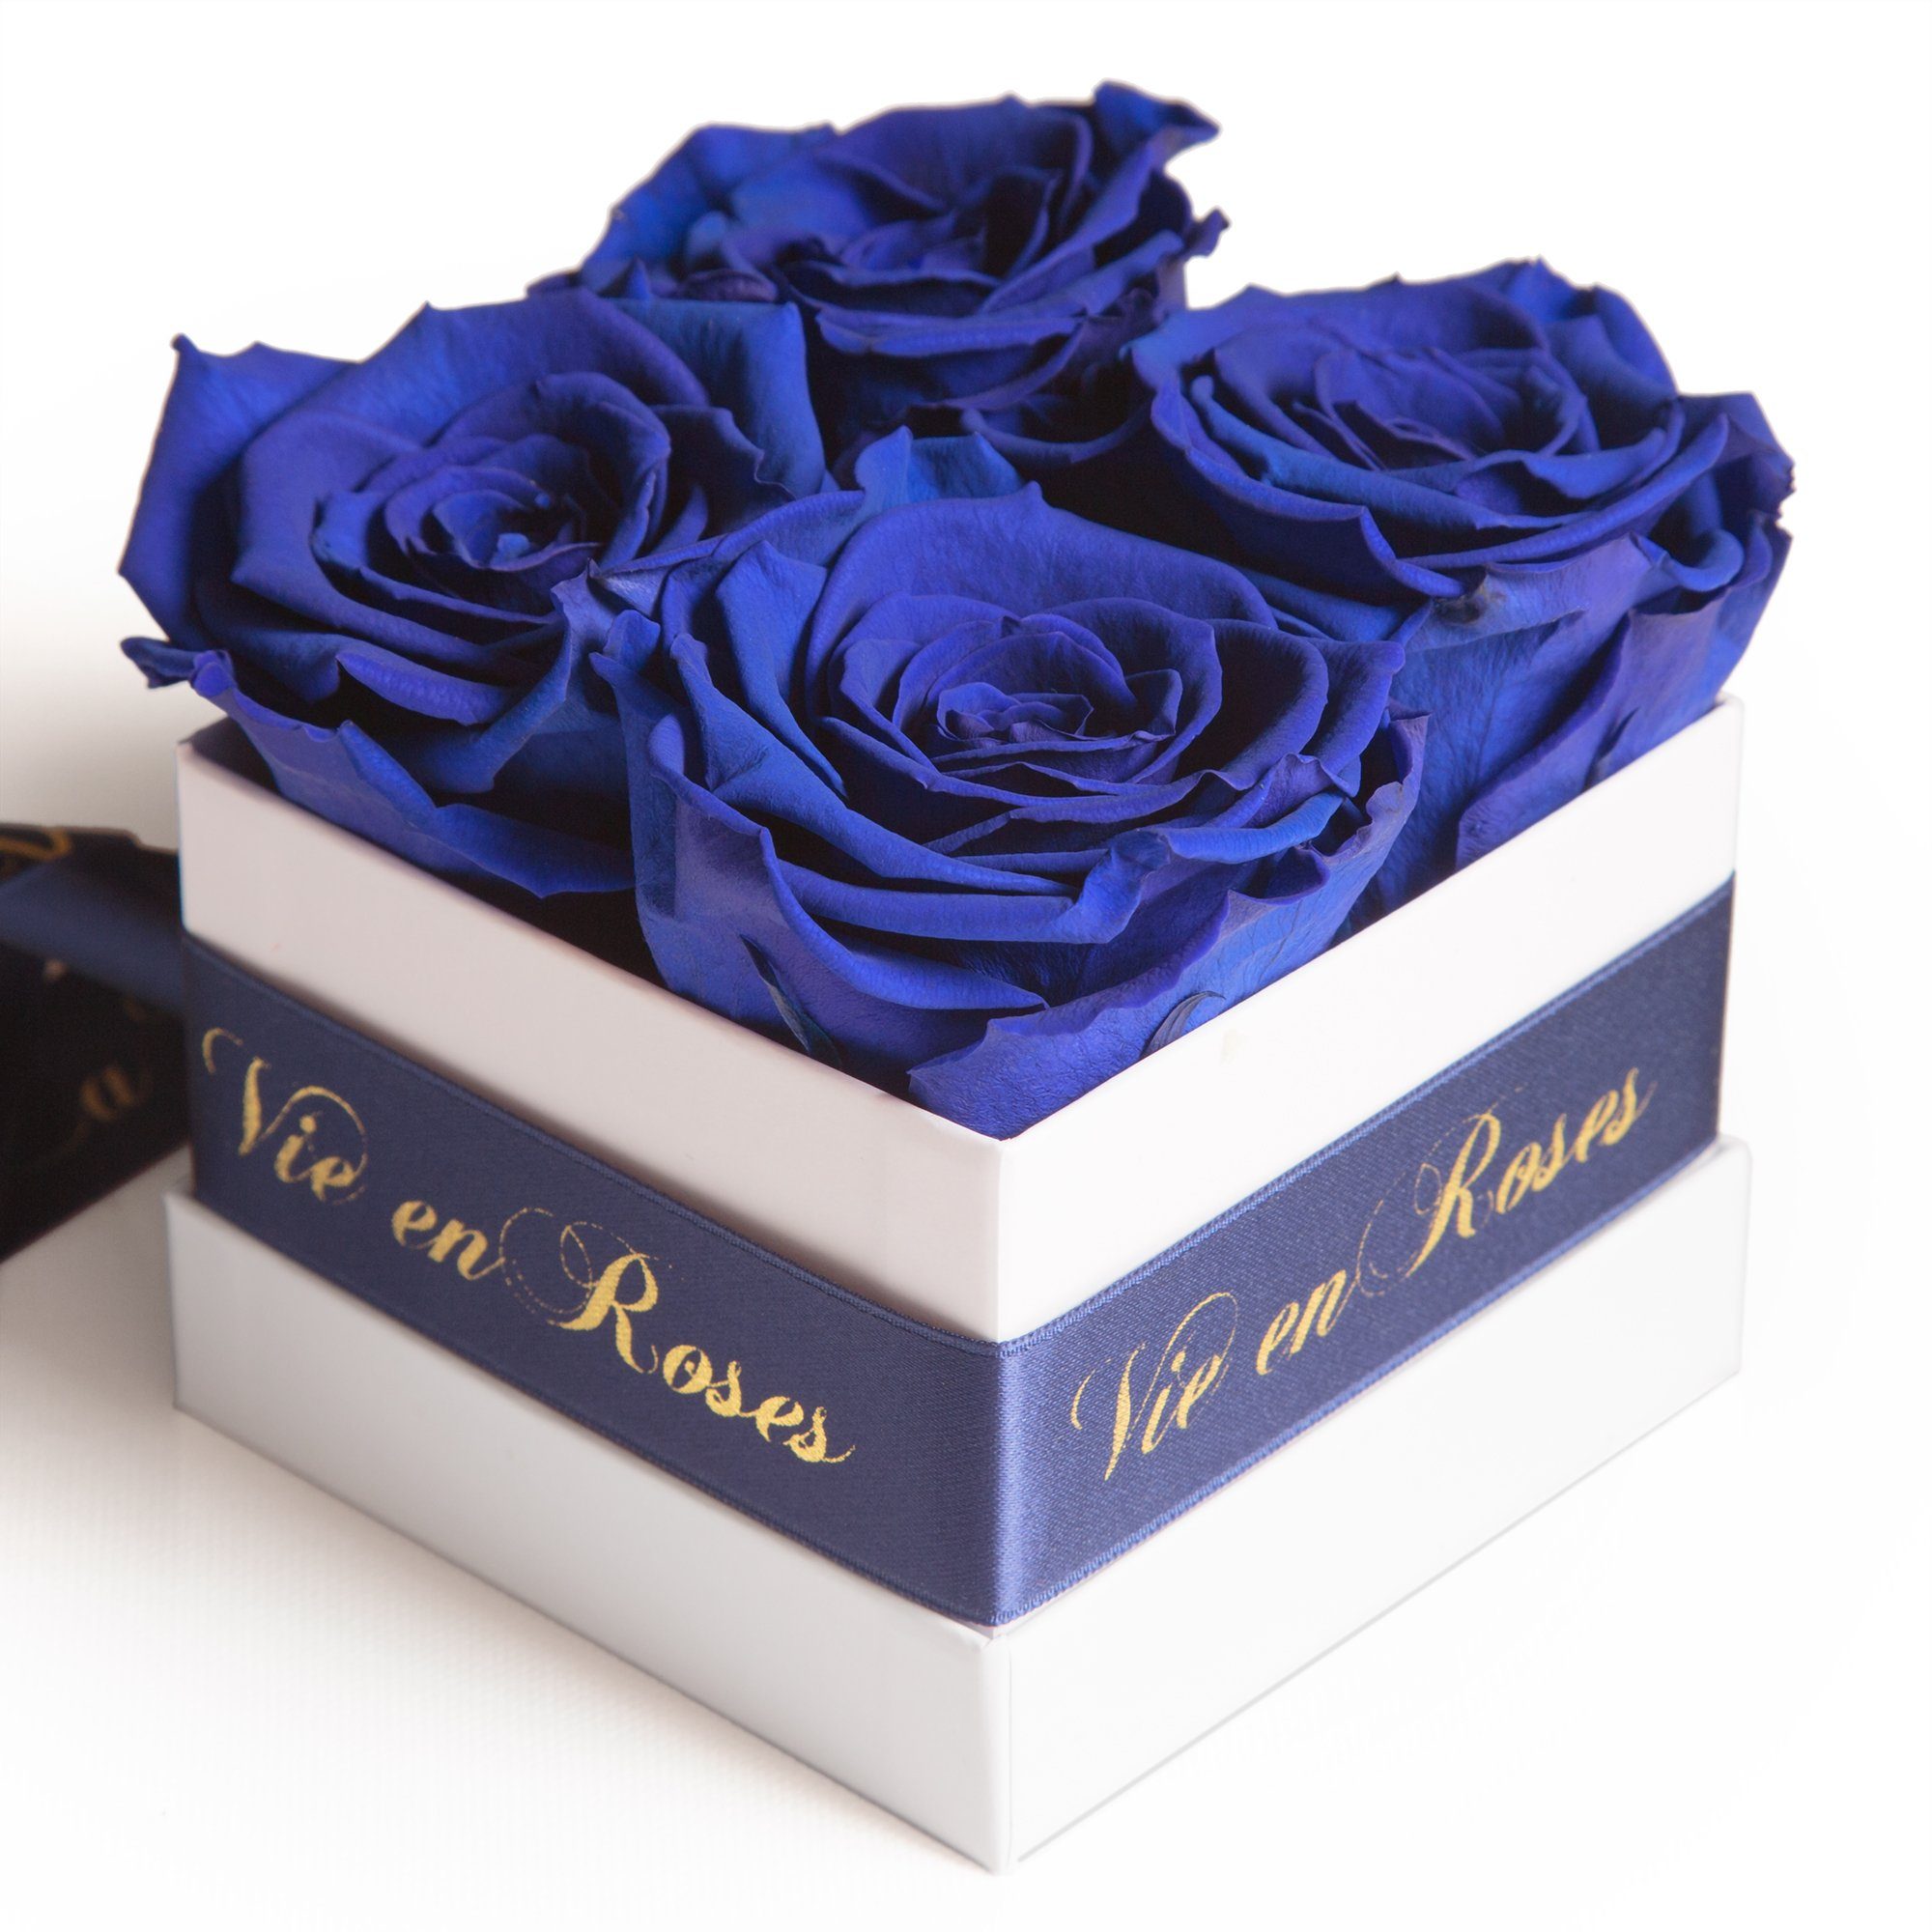 Heidelberg, Rosenbox cm, weiß Rose, Frauen blau Kunstblume zum Rosen 8.5 Höhe für Poesie Deko für Damen Infinity SCHULZ ROSEMARIE Geschenk Valentinstag